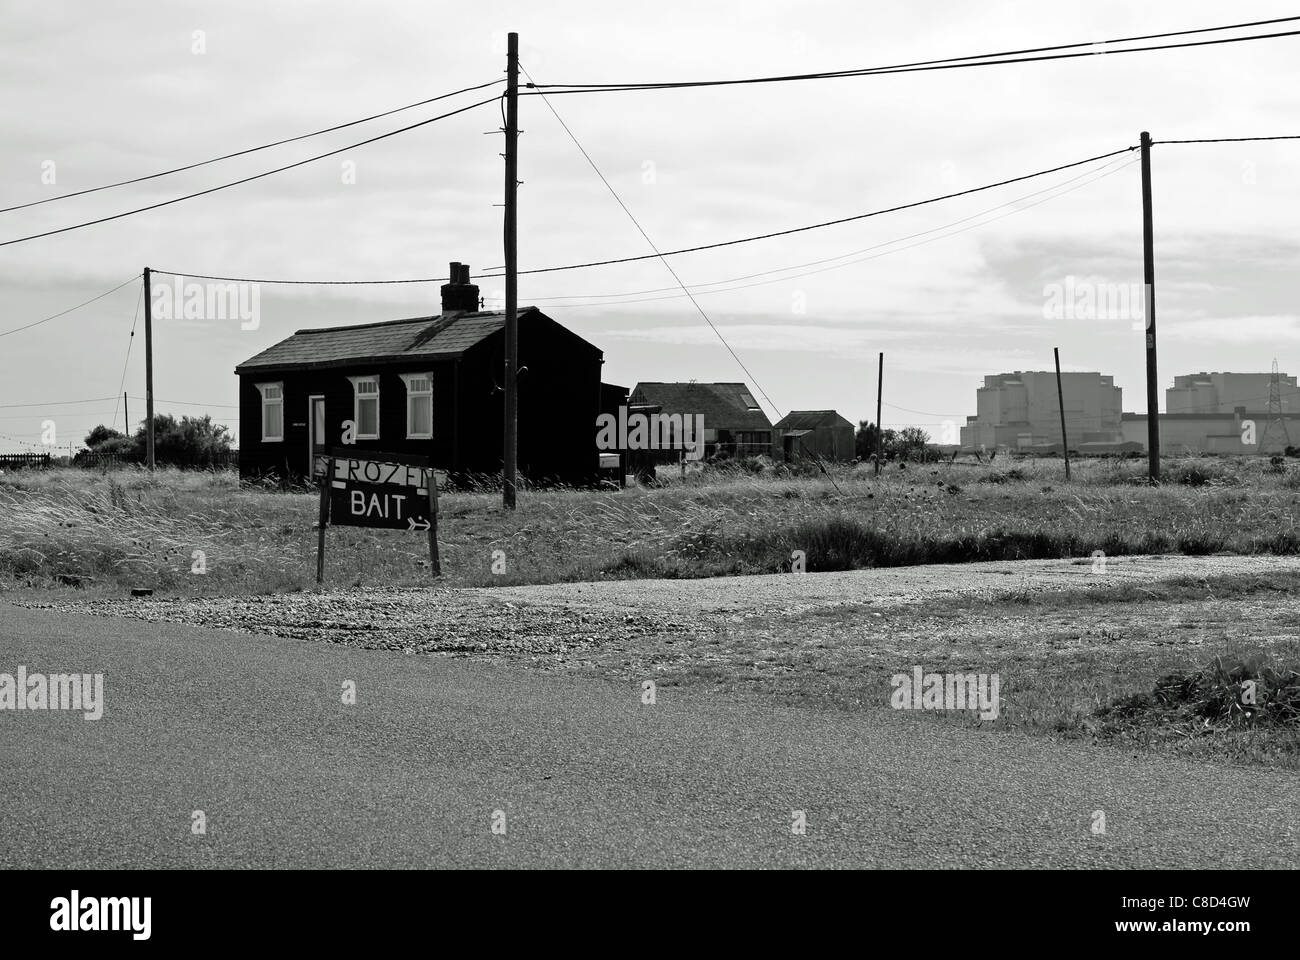 Eine stimmungsvolle Schwarz-Weiß-Aufnahme, typisch für die Gegend Rund um Dungeness und New Romney wo eine alte Art Leben trifft Moderne Stockfoto